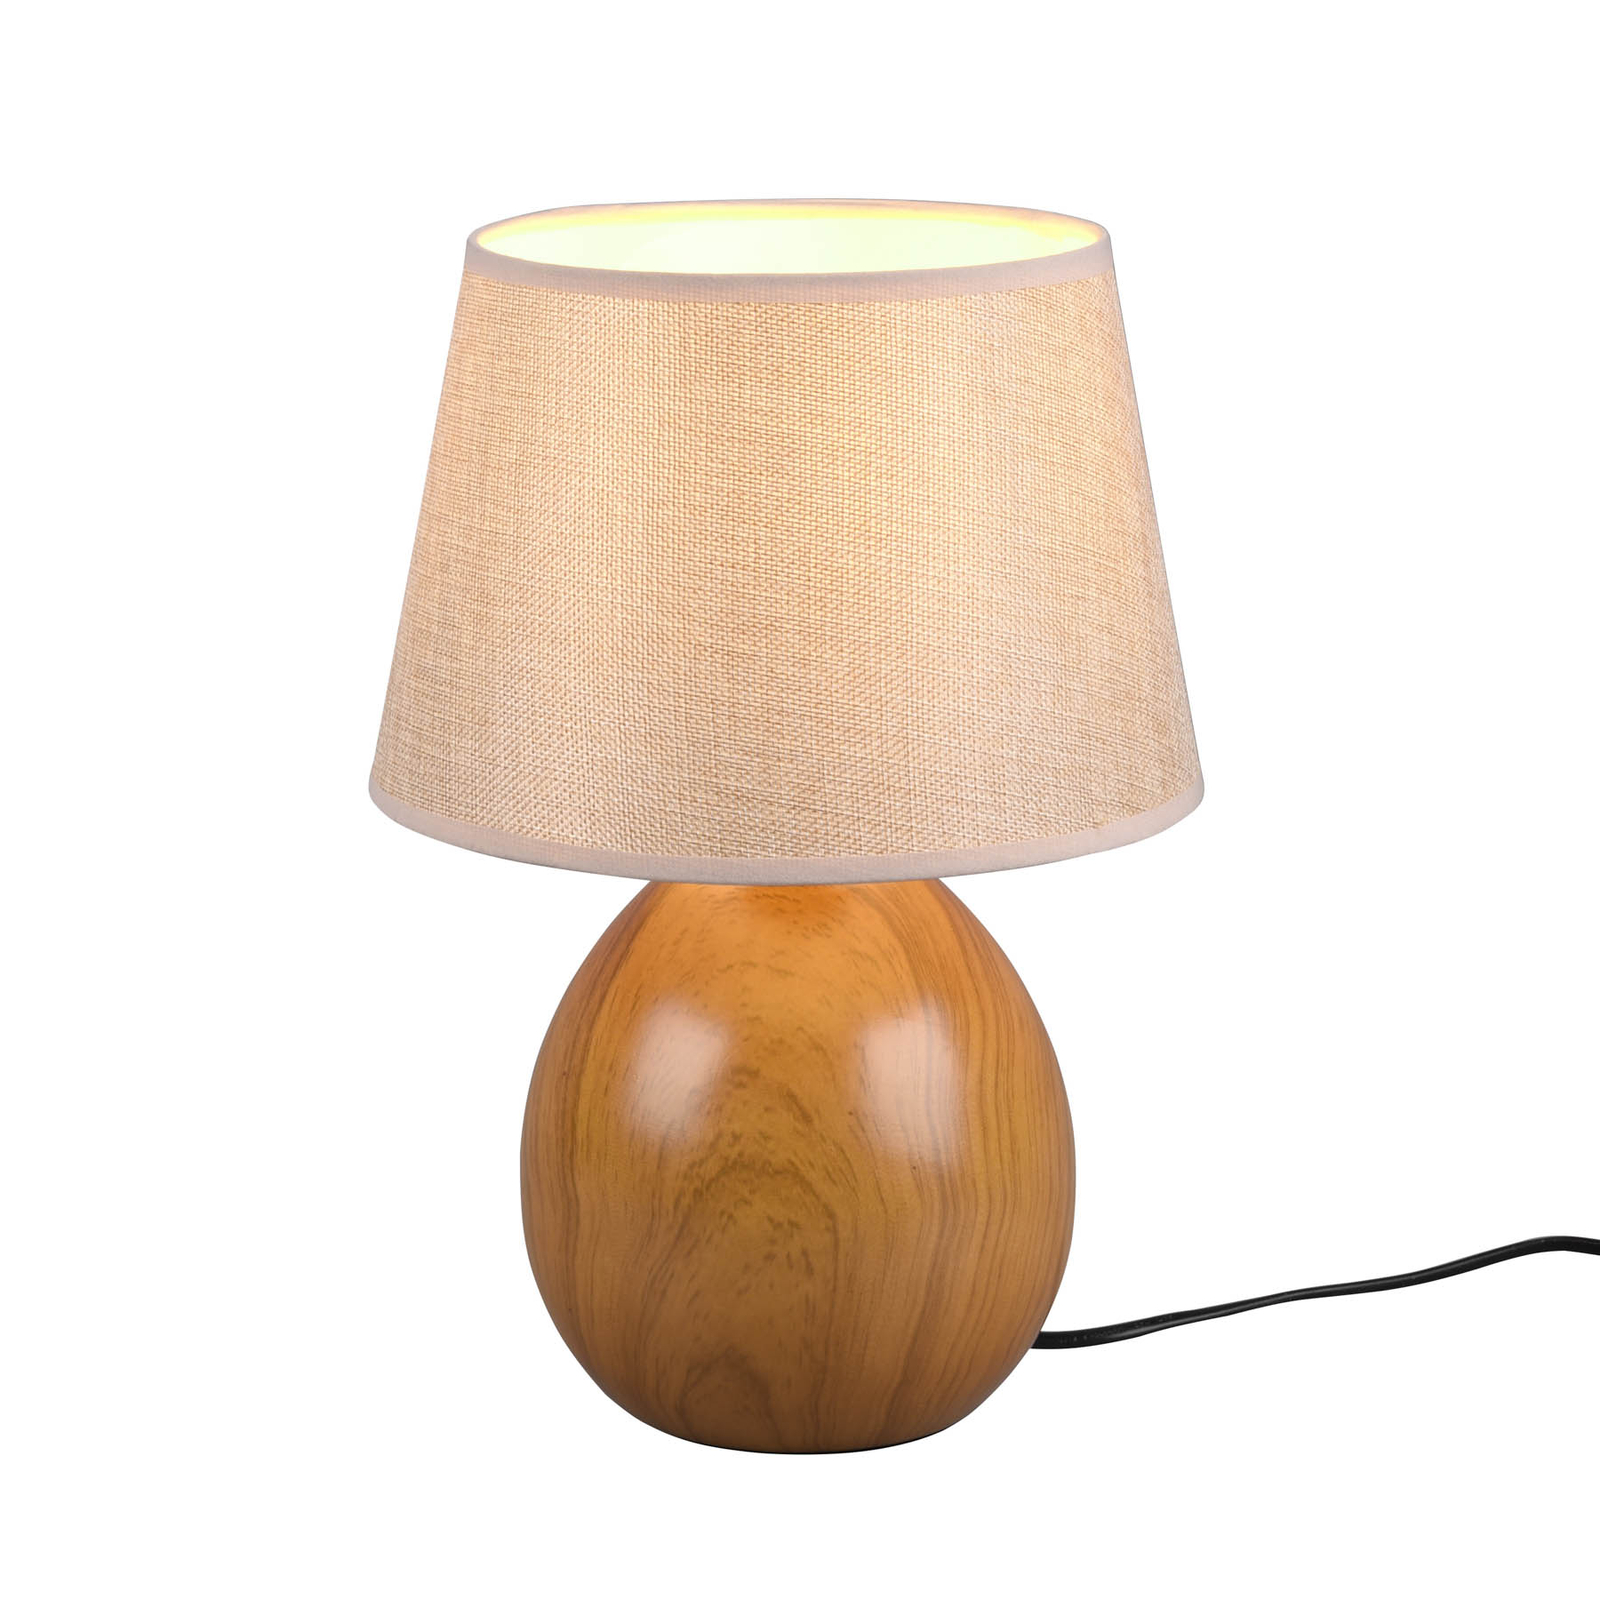 Tafellamp Loxur, hoogte 35cm, beige/houtoptiek